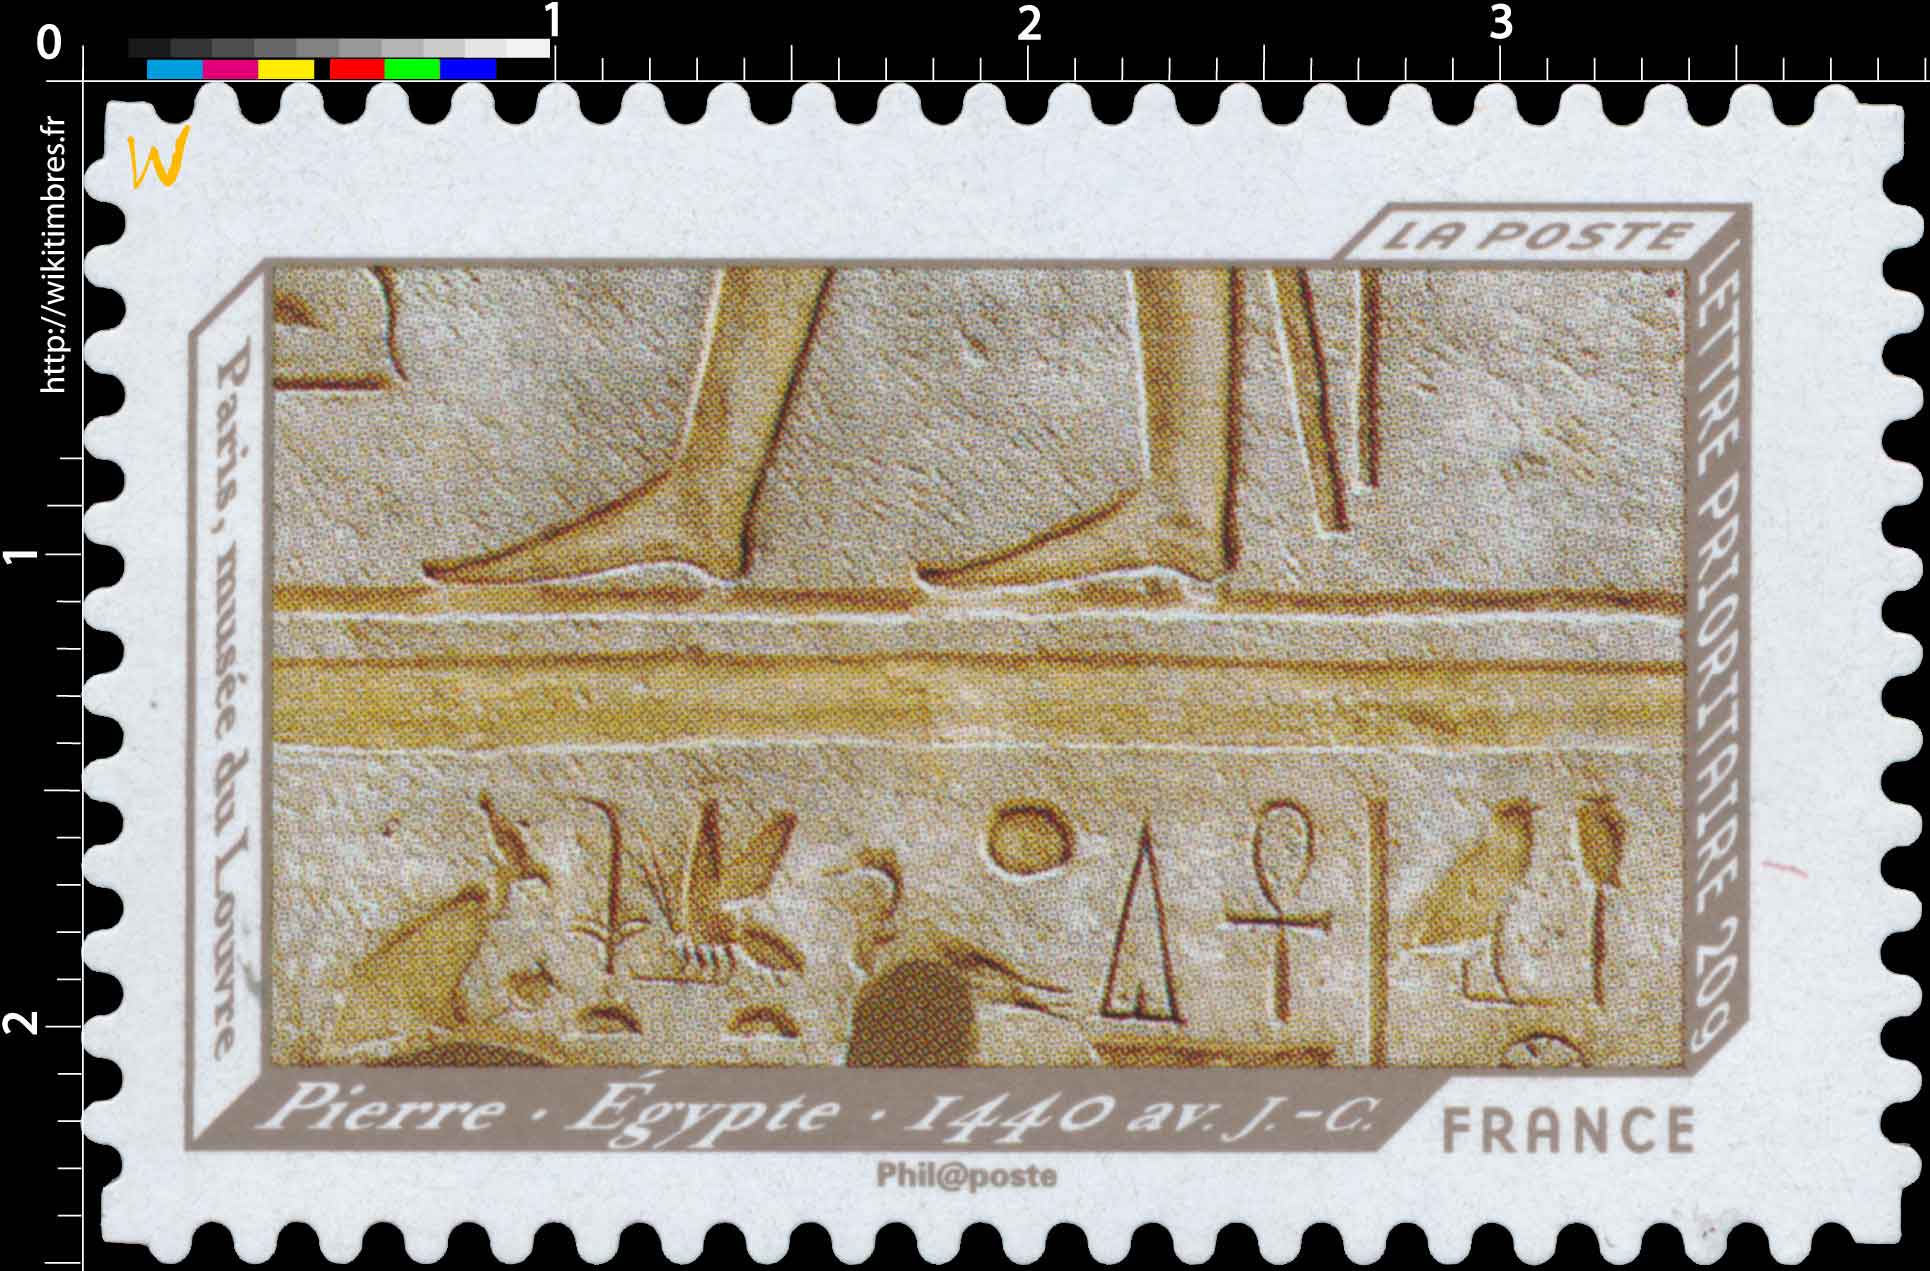 Pierre . Égypte . 1440 av. J.-C. Paris musée du Louvre